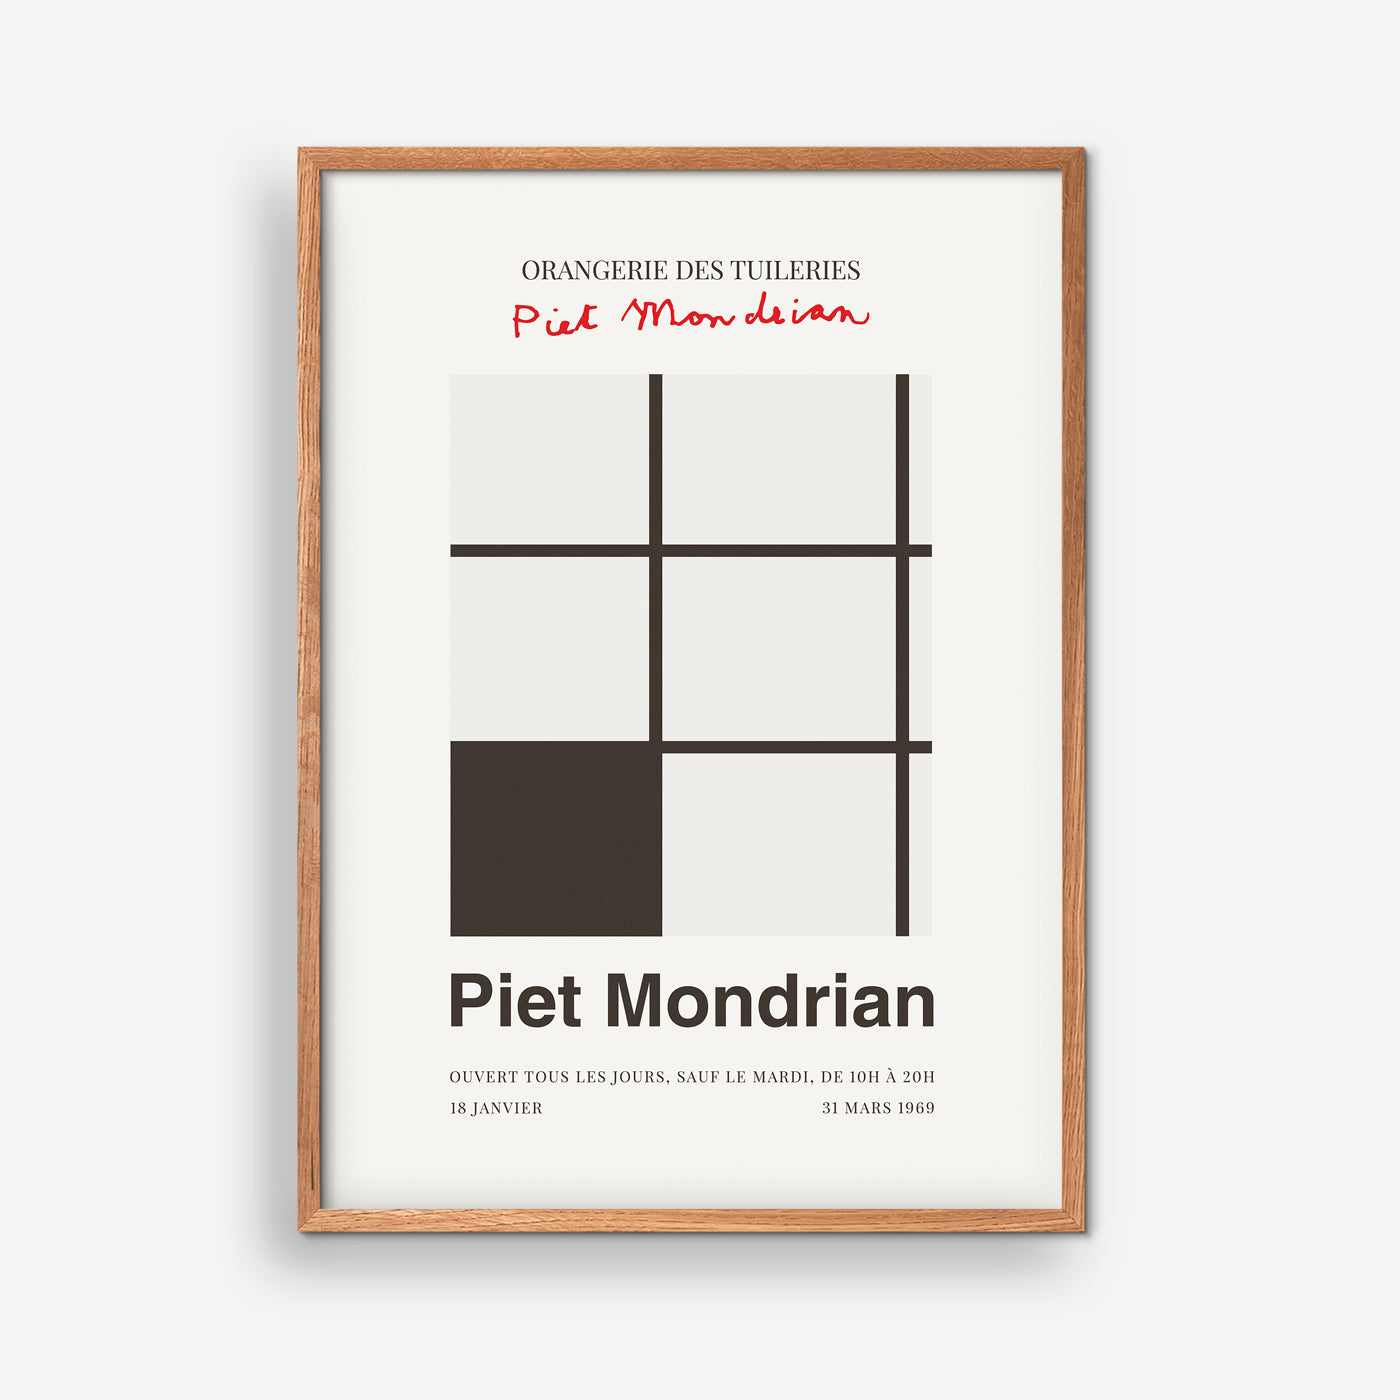 Piet Mondrian - Orangerie Des Tuileries